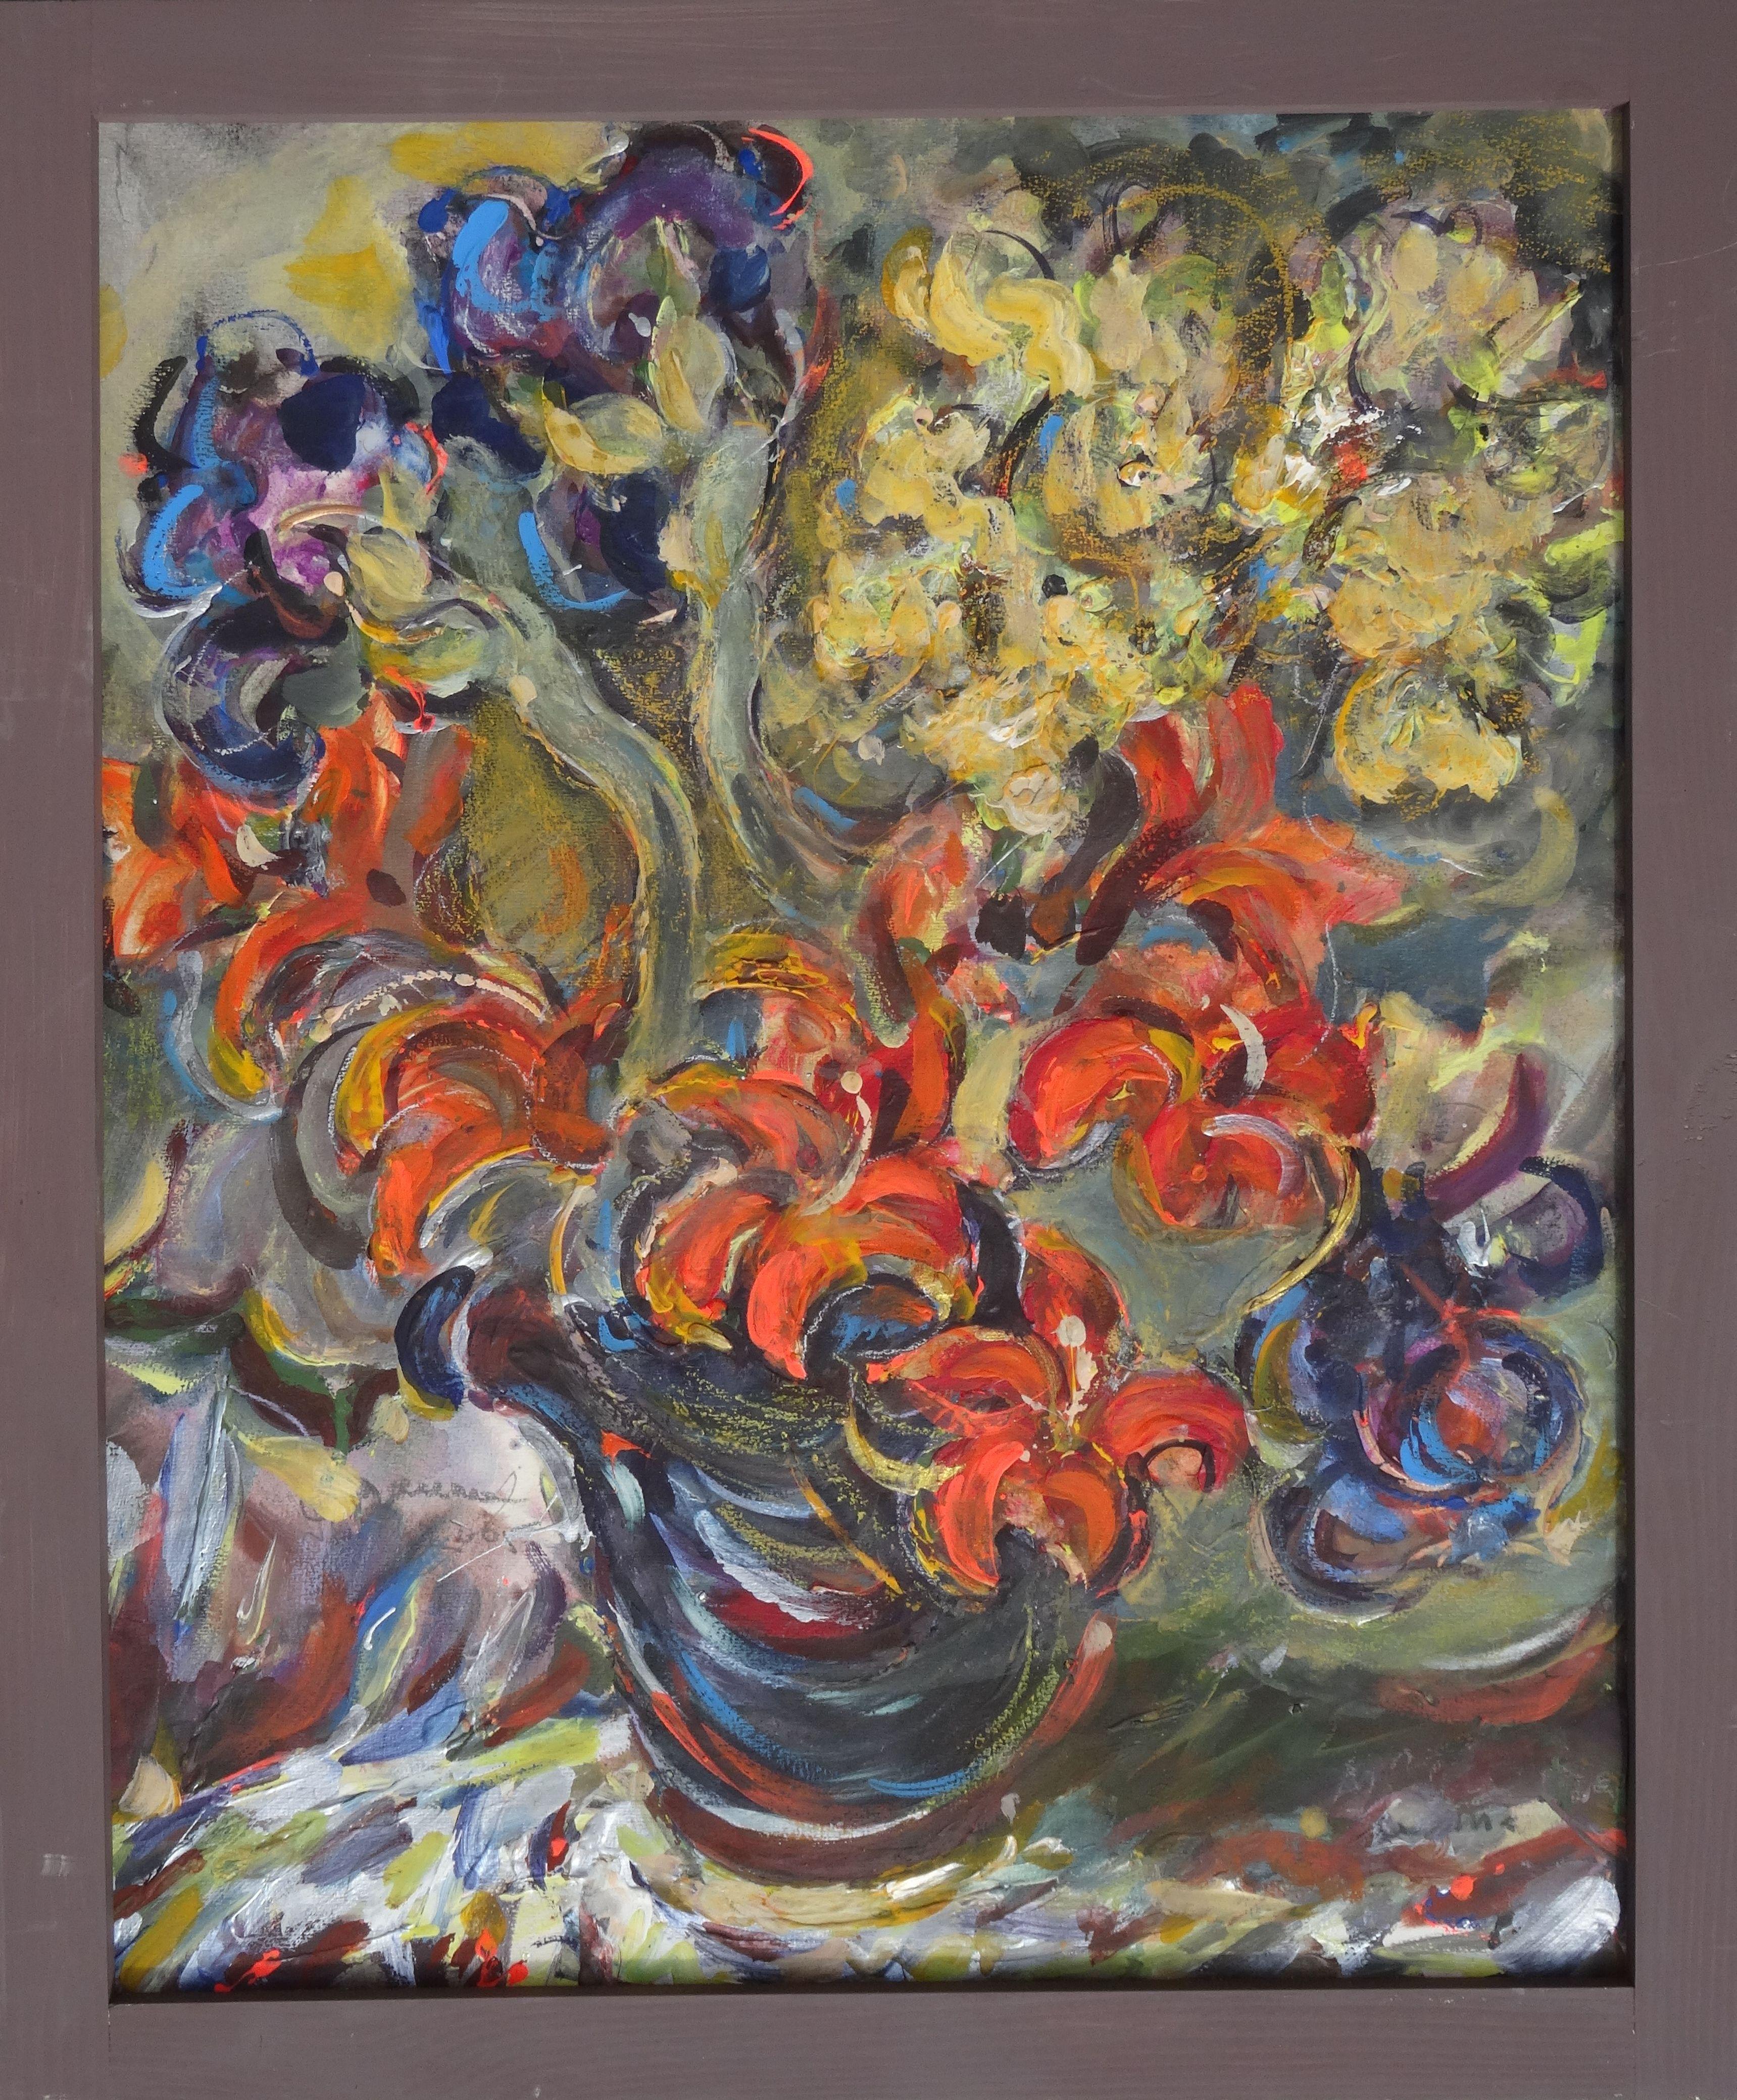 La fleur est une fleur. Cardboard, supports mixtes, 60 x73 cm - Painting de Dzidra Bauma